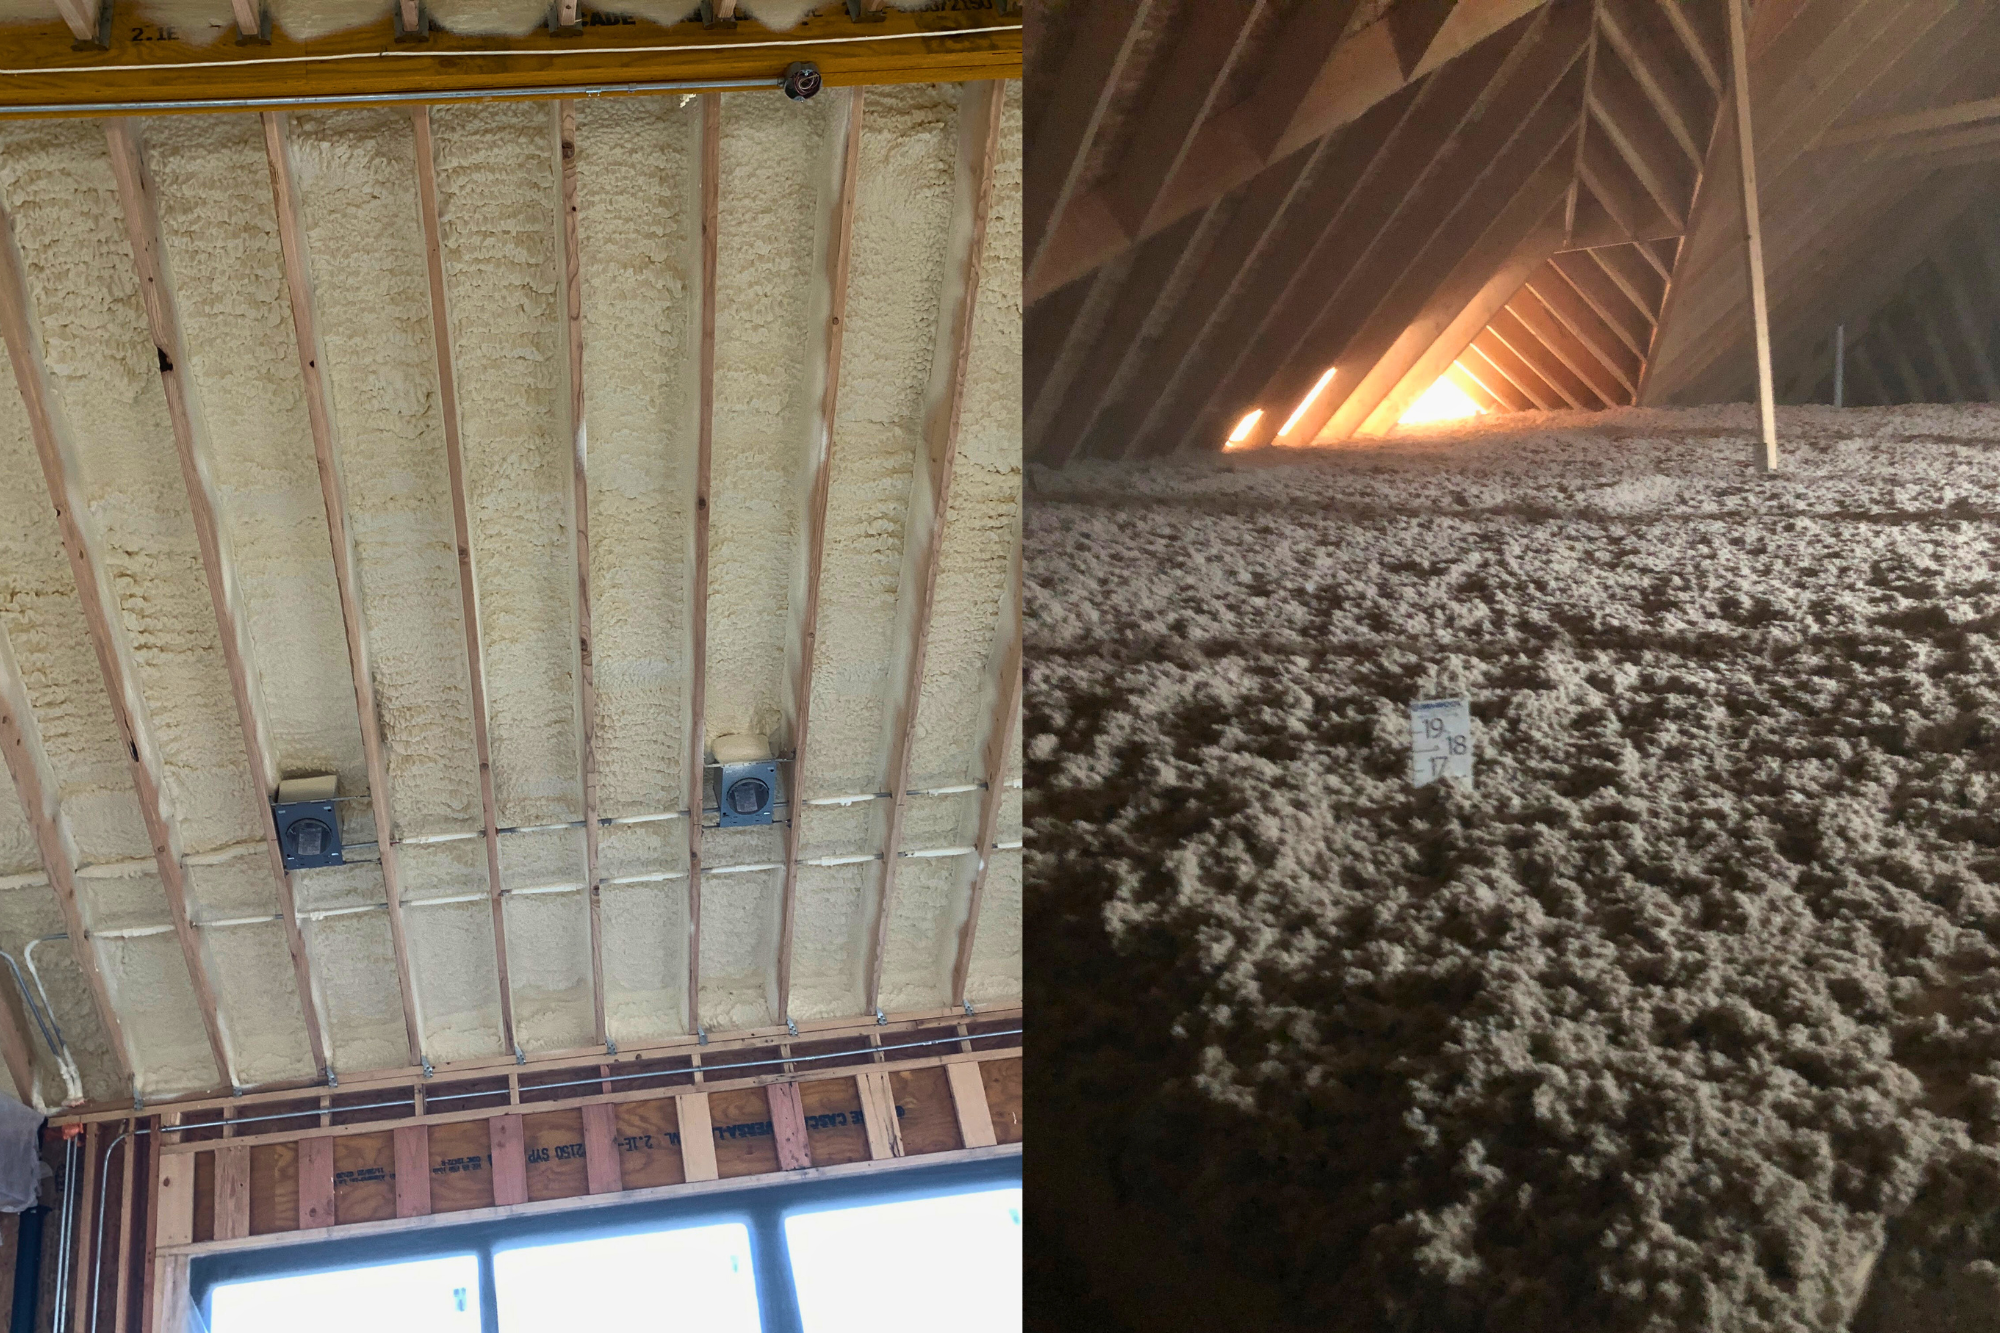 Spray Foam Insulation vs. Cellulose Insulation